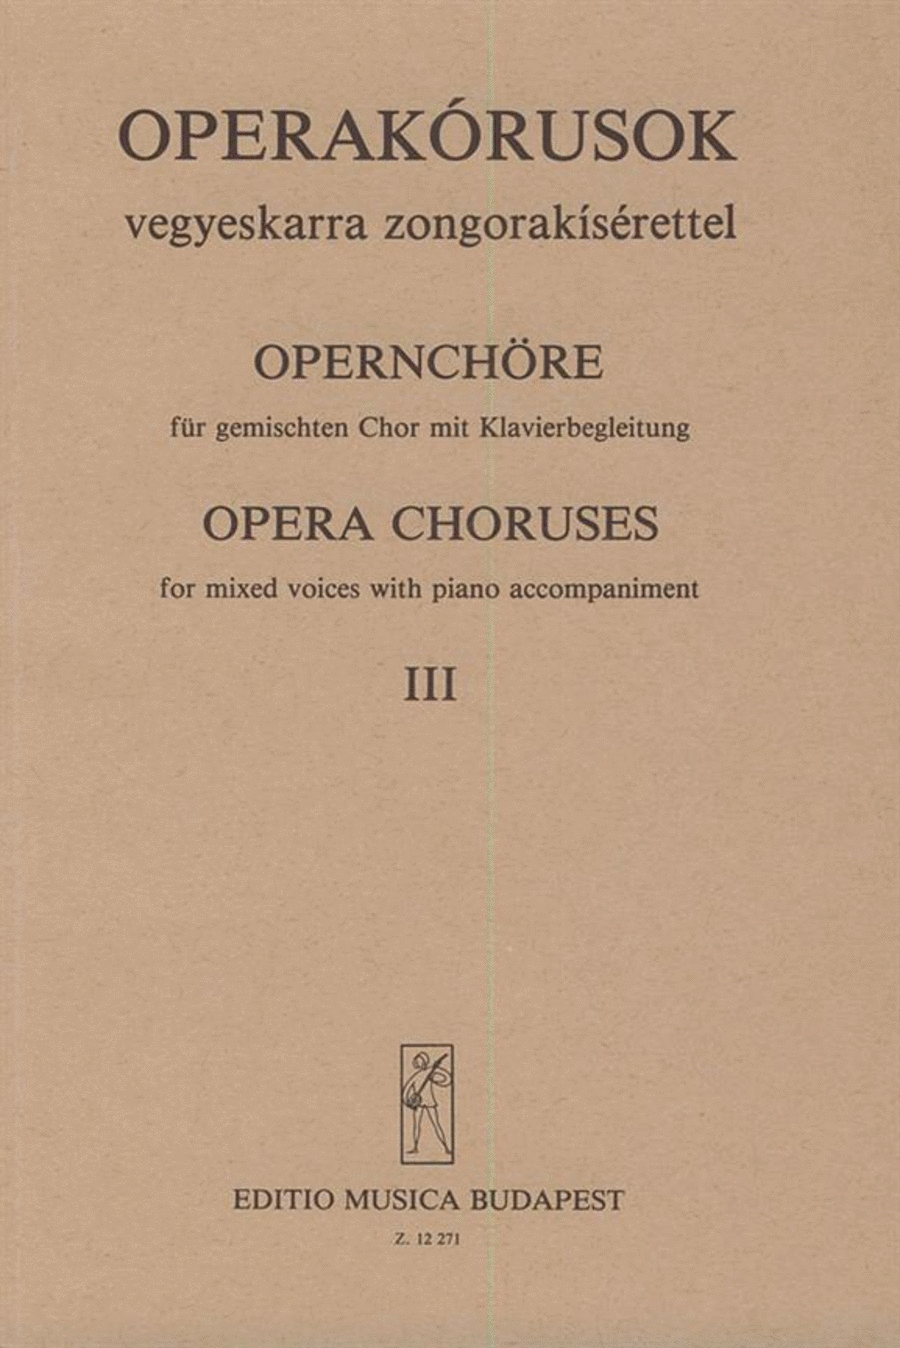 Opernchöre III für gemischten Chor mit Klavierbeg